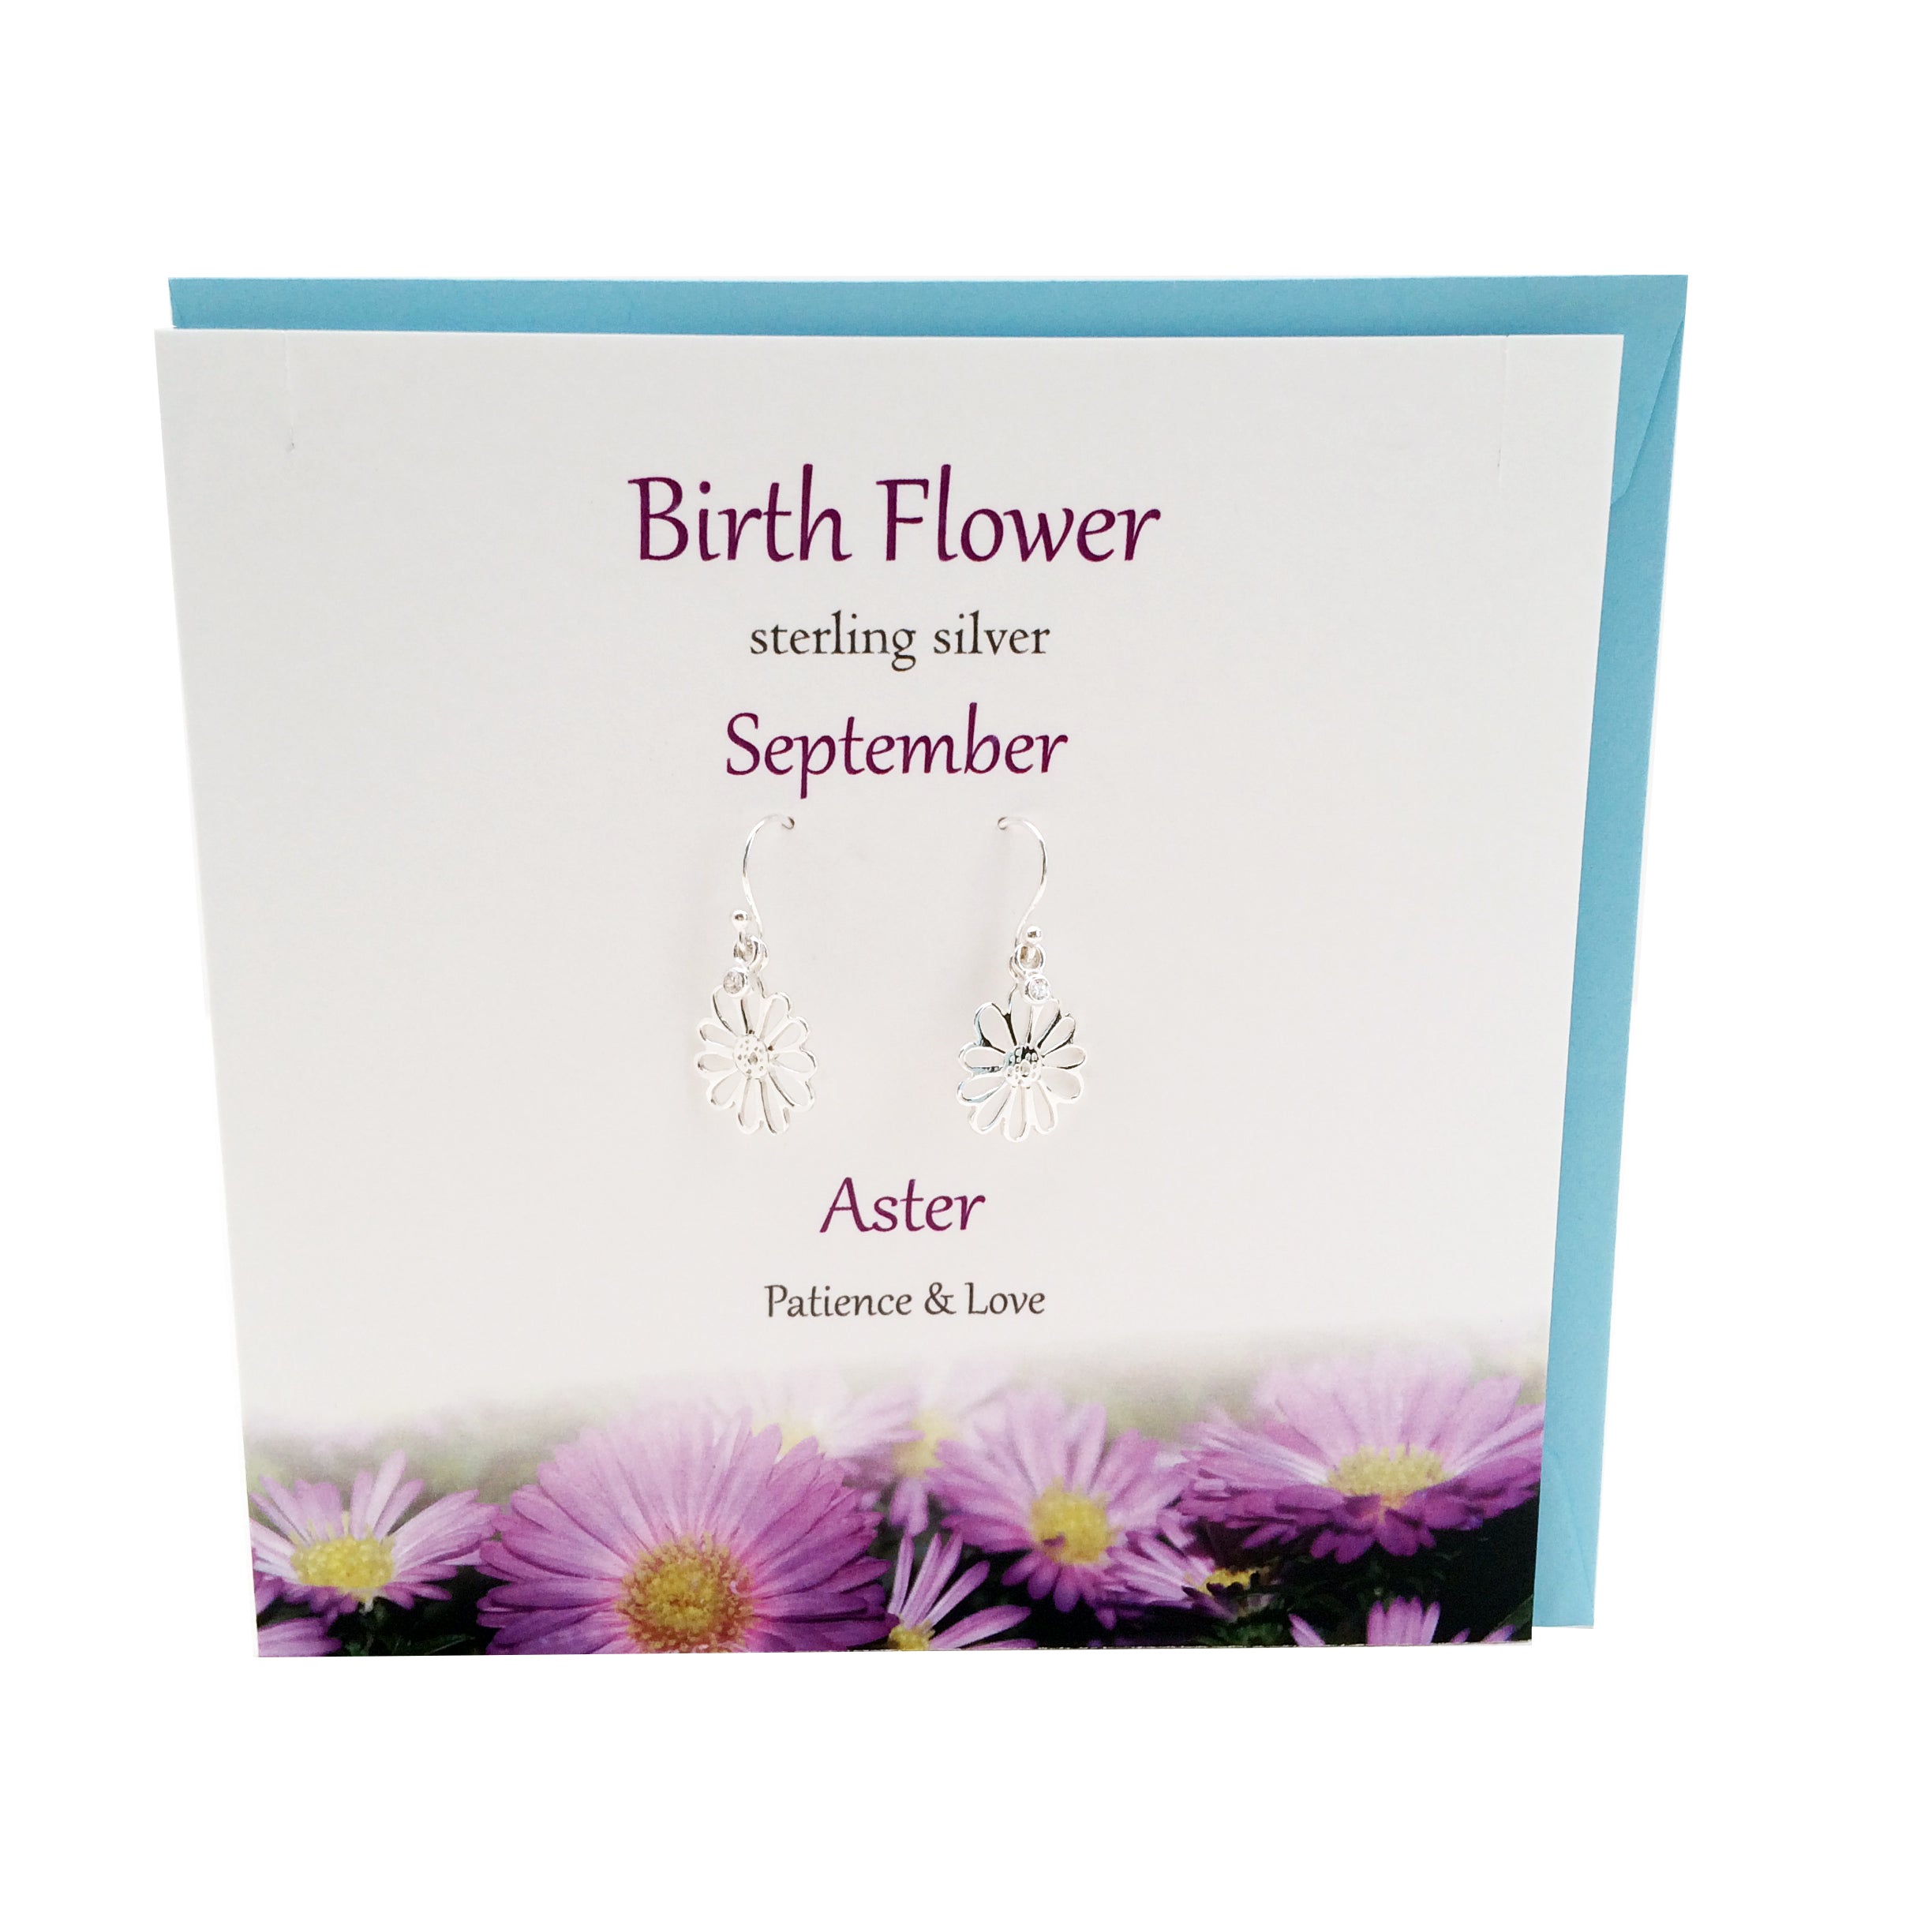 Birth Flower September silver earrings |Aster | The Silver Studio